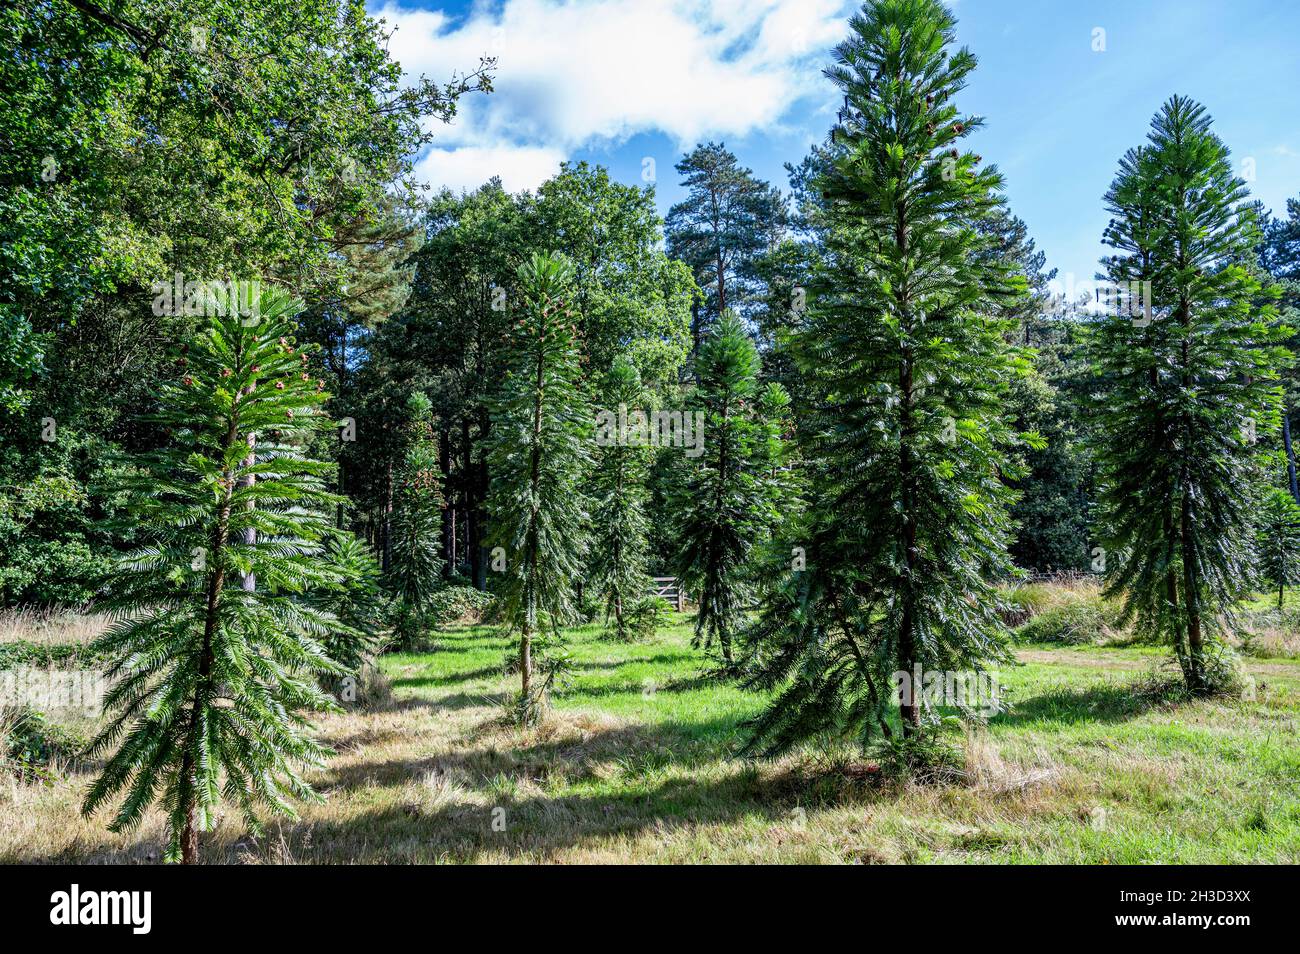 Pinus woollimii, Pino di Wollemi, Wollemia nobilis, Araucariaceae. Conifere in via di estinzione che si trovano solo nella natura selvaggia, nell'Australia Meridionale. Foto Stock